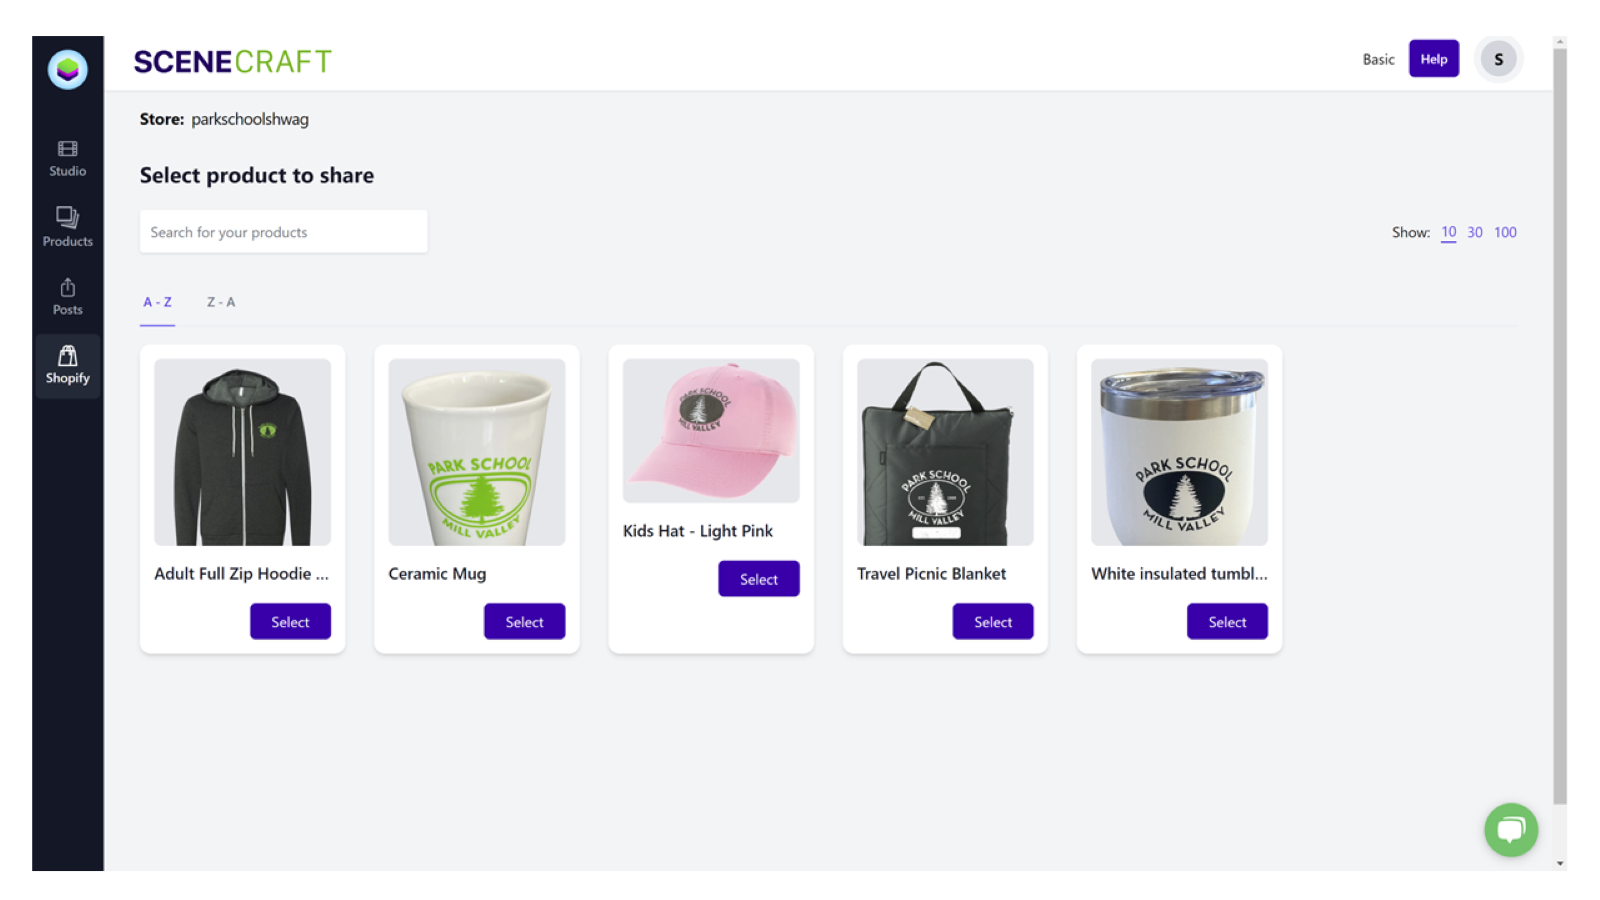 Kies een product om te gebruiken uit uw Shopify-winkel